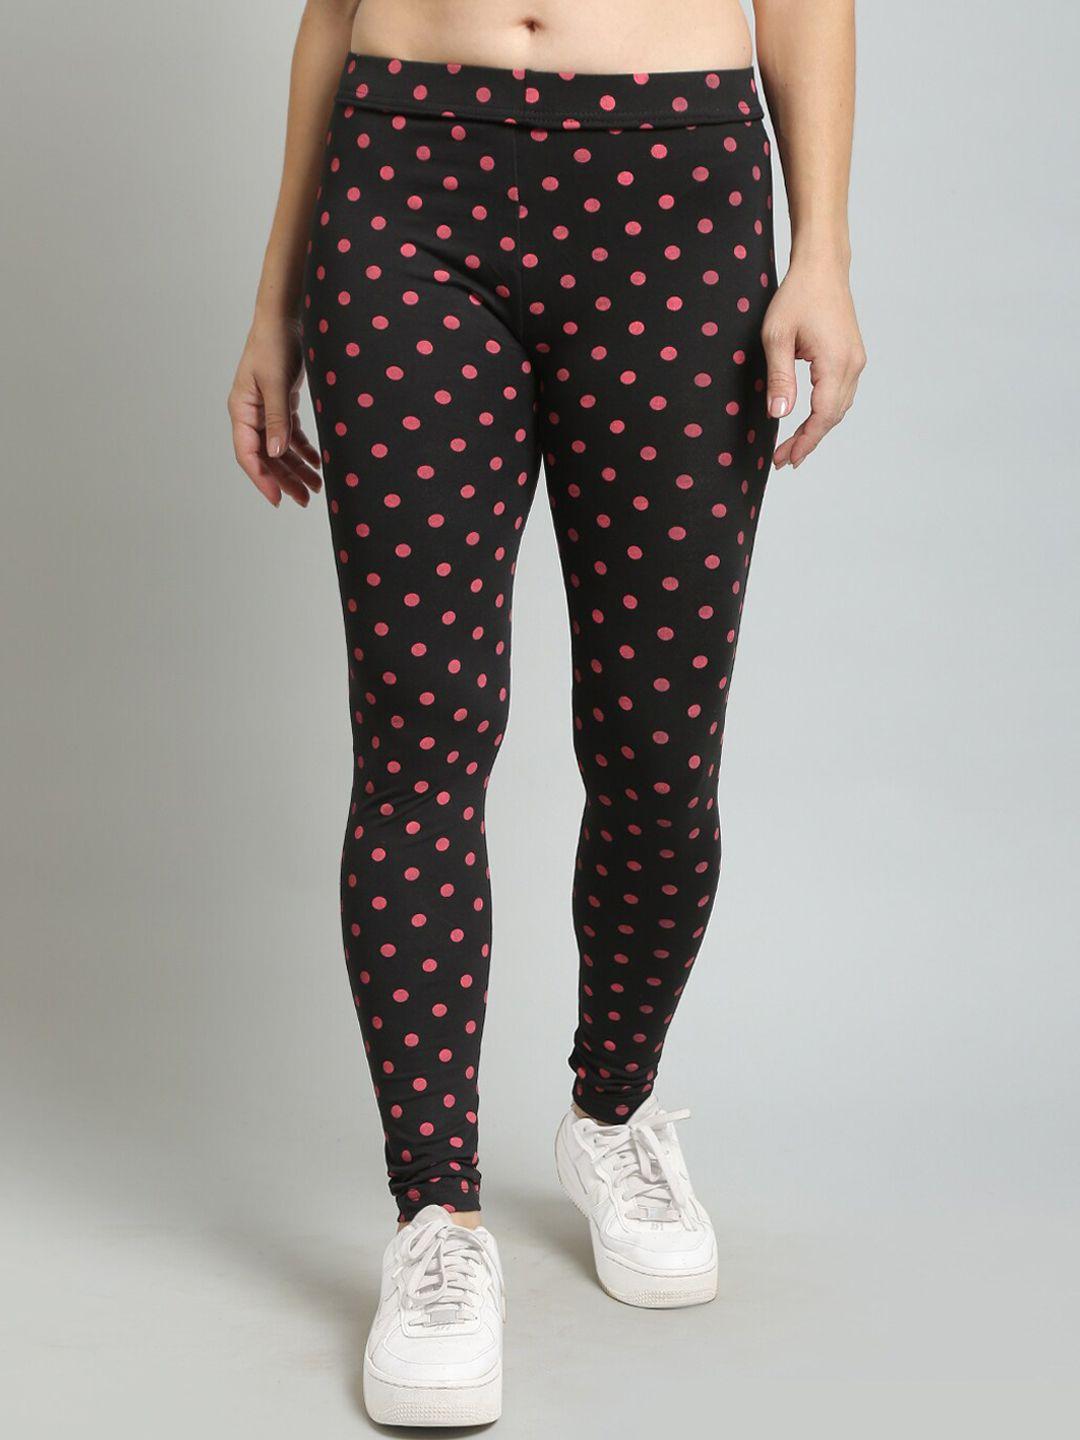 n-gal polka dots print leggings